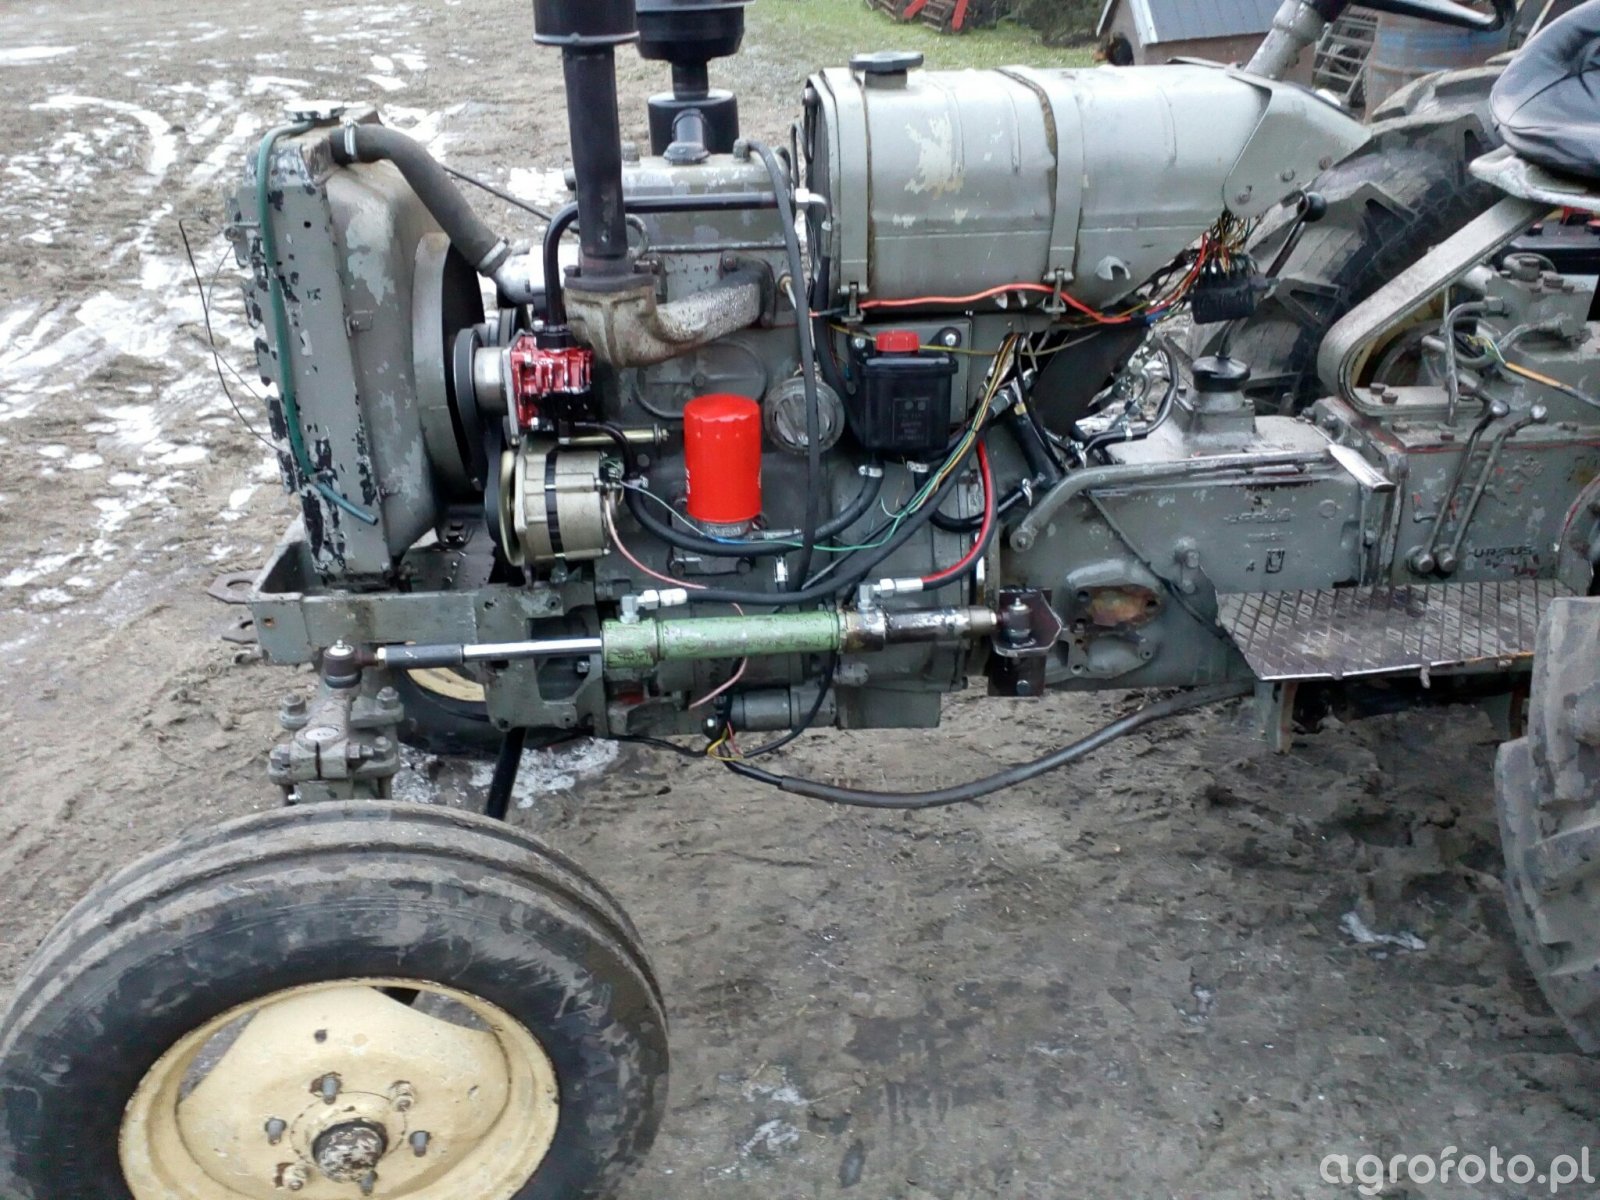 Fotografia traktor Wspomaganie w Ursusie C330 id714941